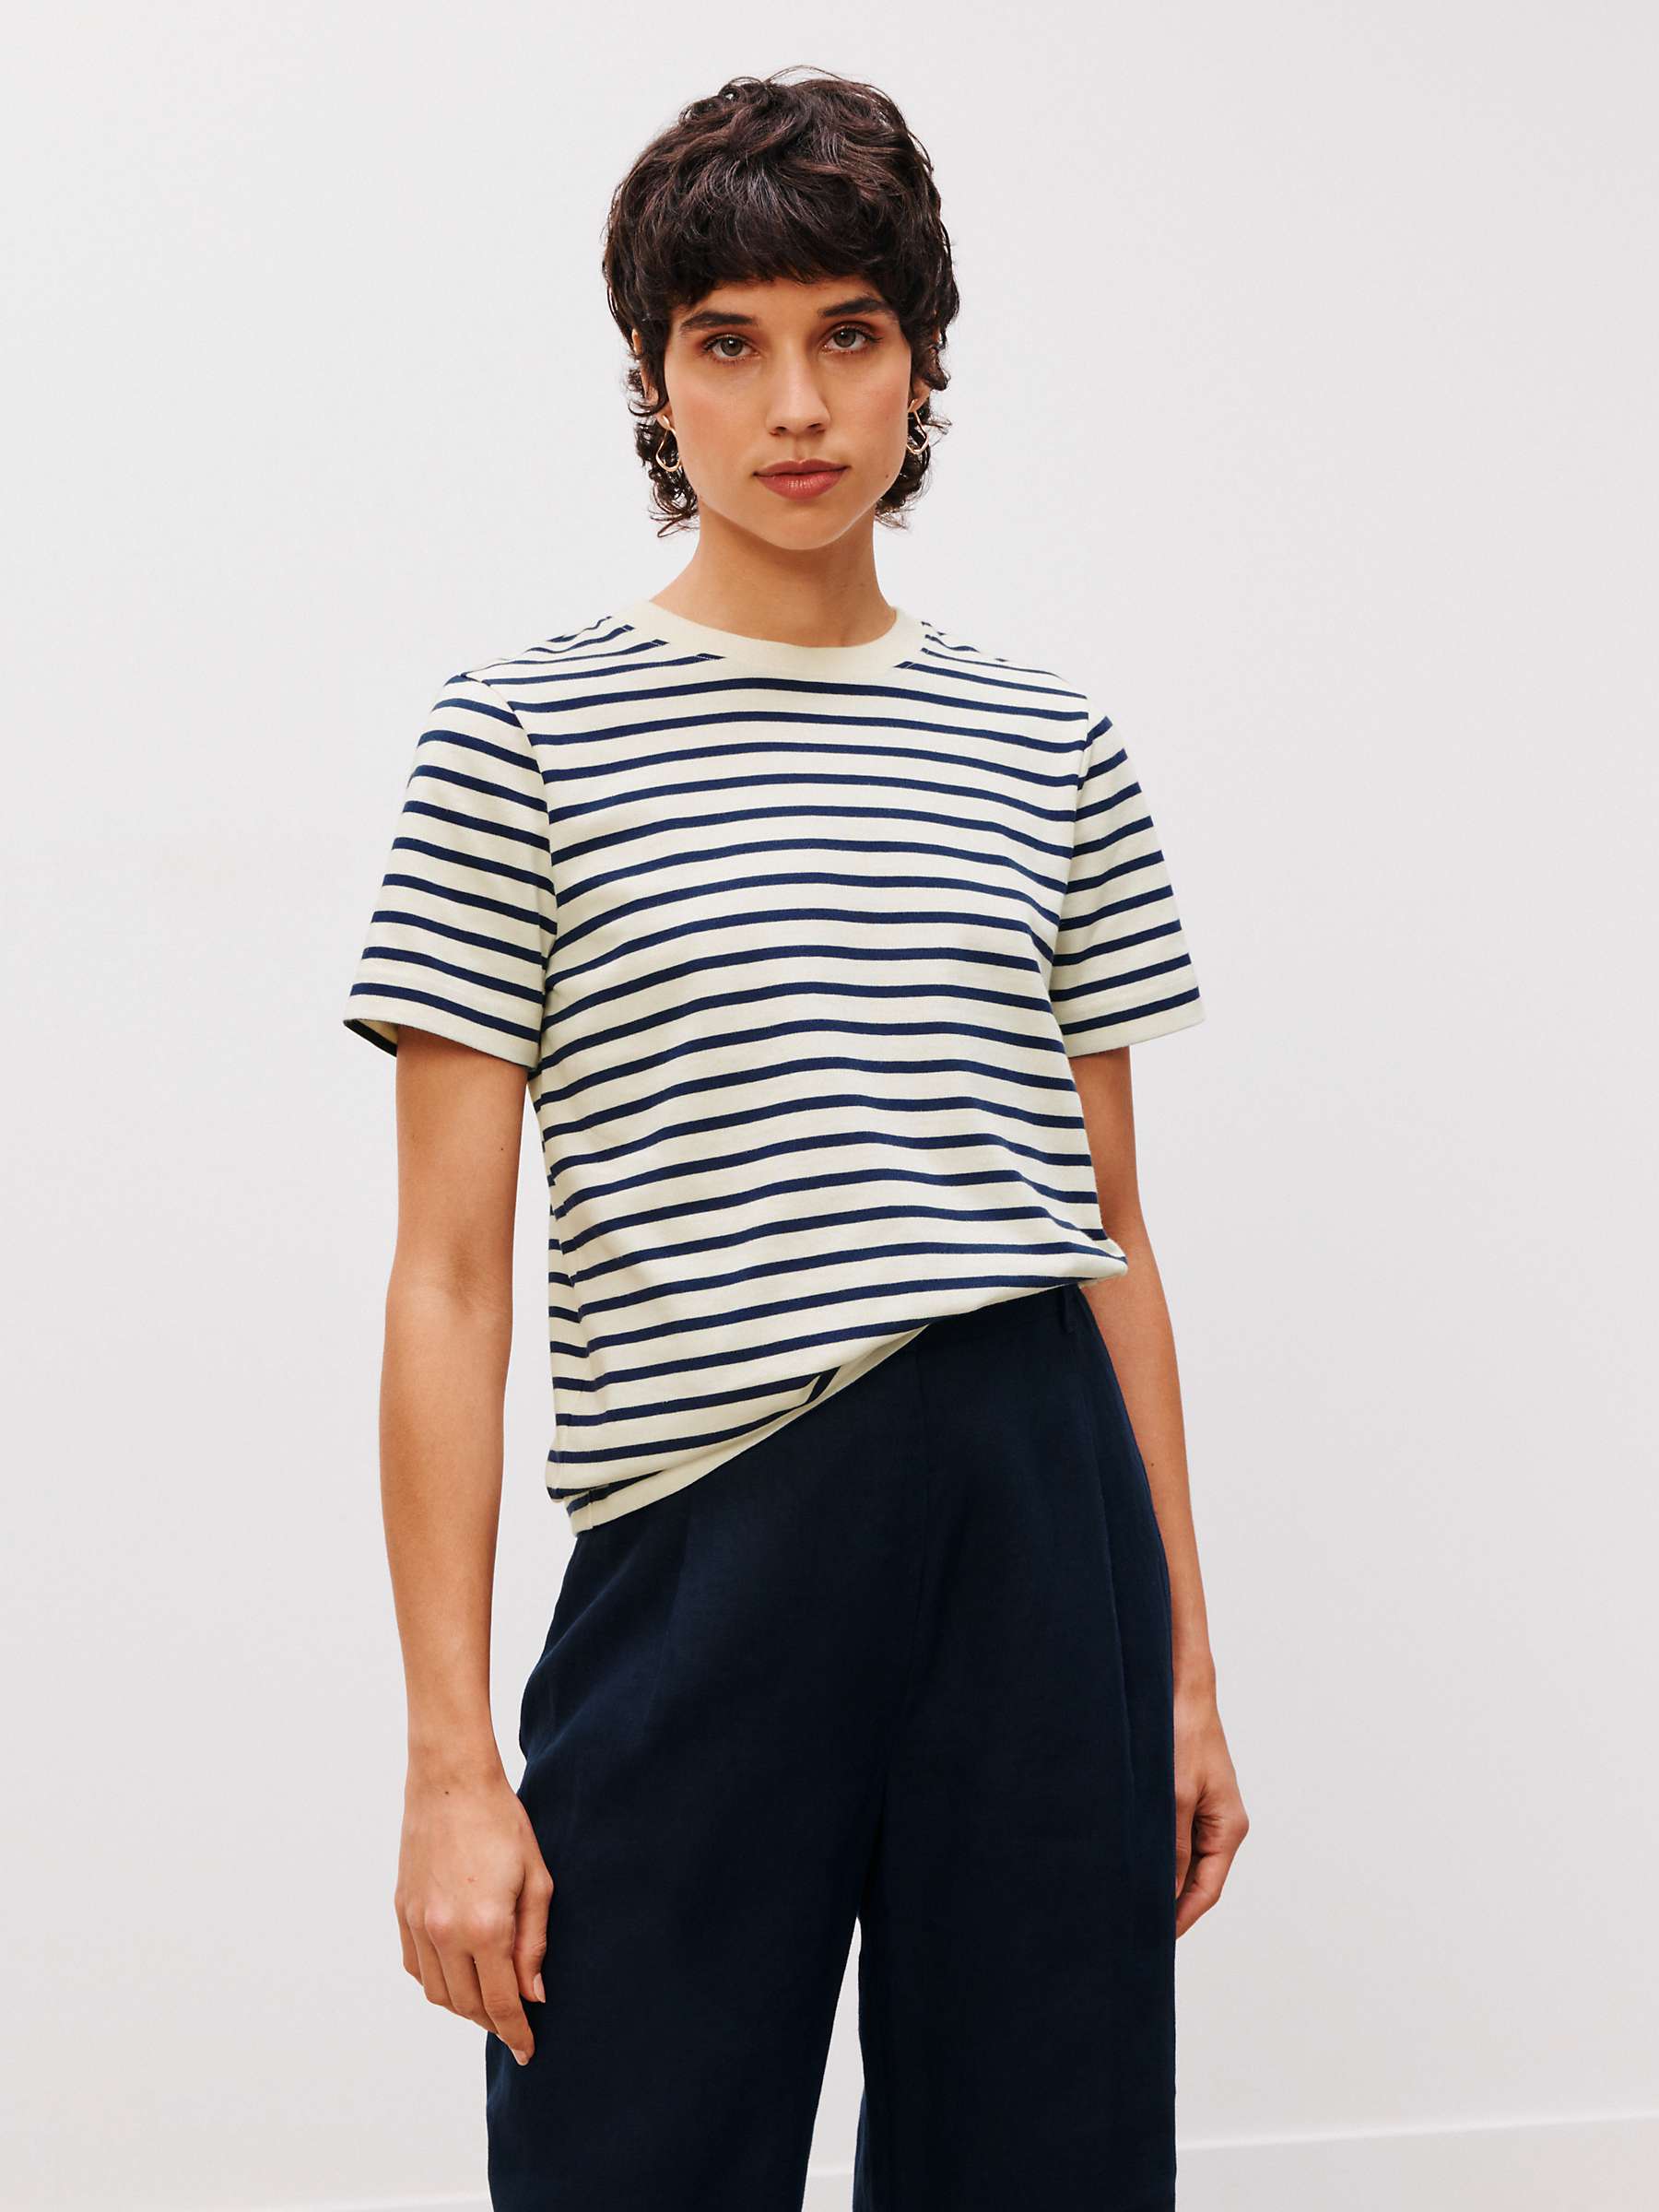 Buy John Lewis Premium Cotton Stripe Short Sleeve T-Shirt Online at johnlewis.com